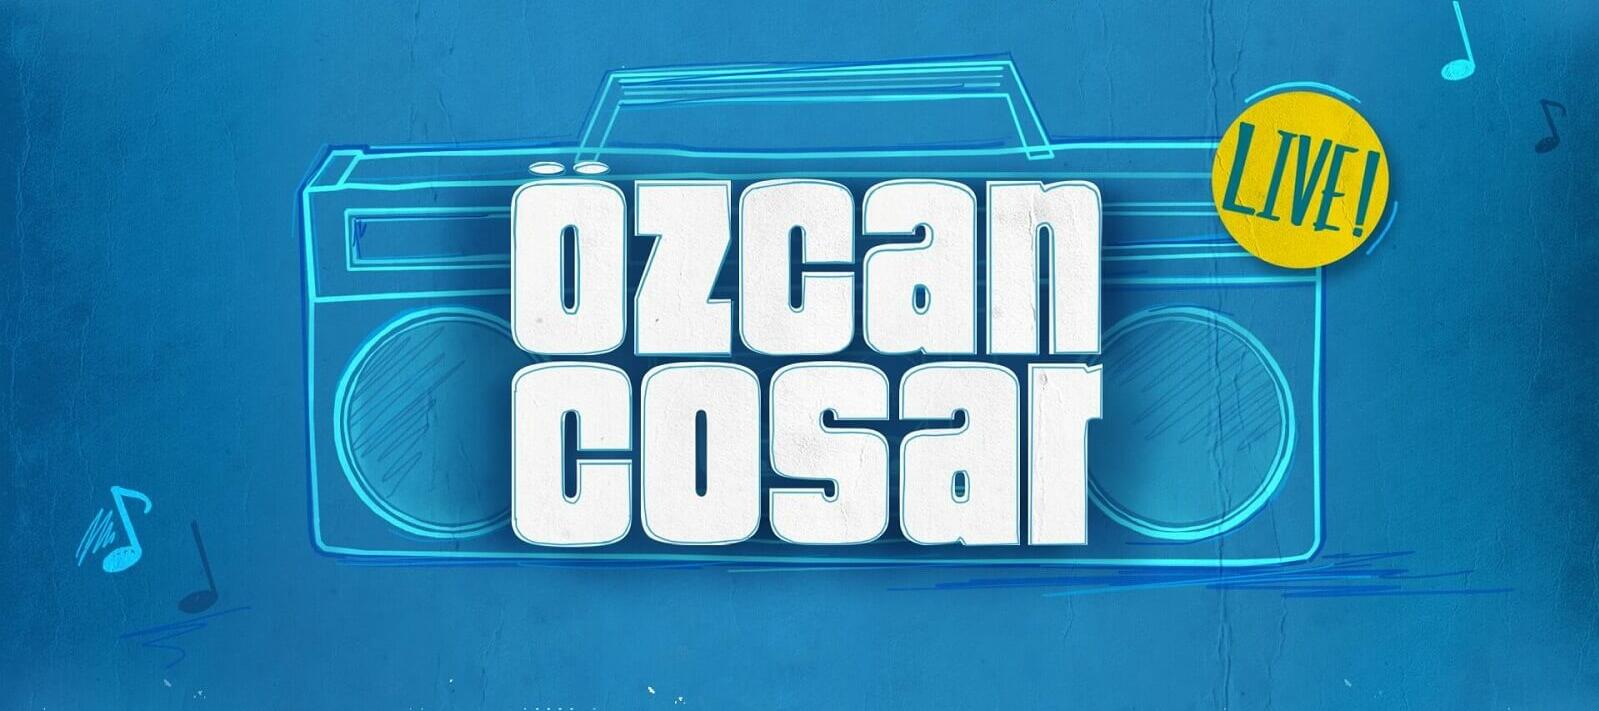 Özcan Cosar Live